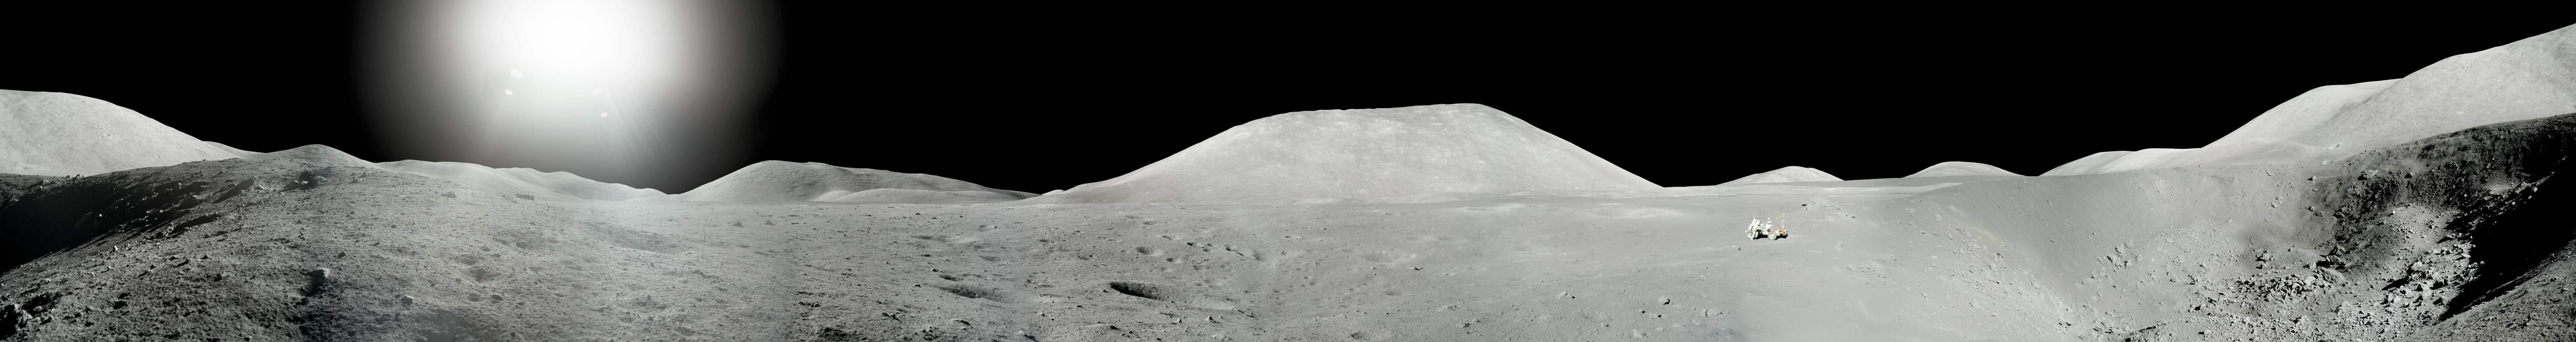 Жнец дрейфующей луны 83. Аполлон 17 панорама. Панорамные снимки Луны Аполлон. Пик Агнесс гора на Луне. Издание которое опубликовали панорамные изображения Луны.